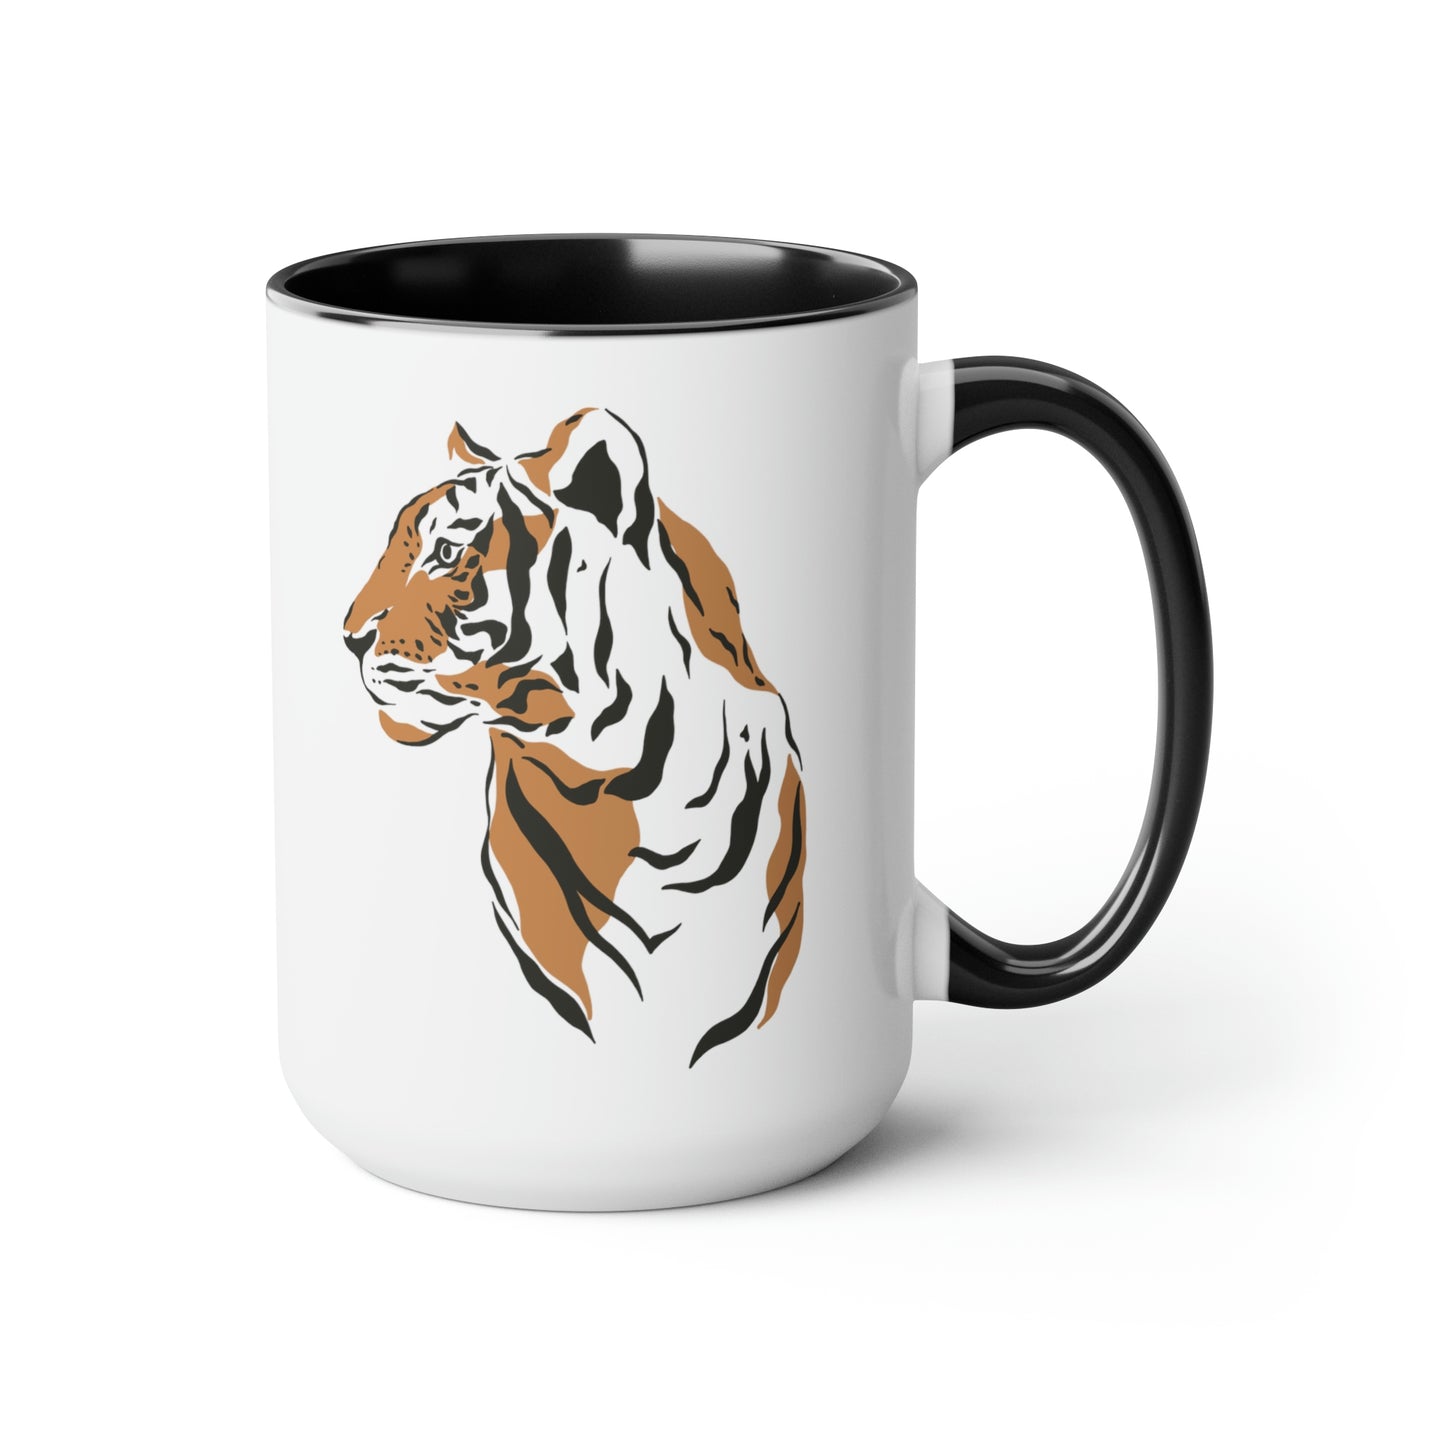 Tiger Graphic Ceramic Mug 15oz